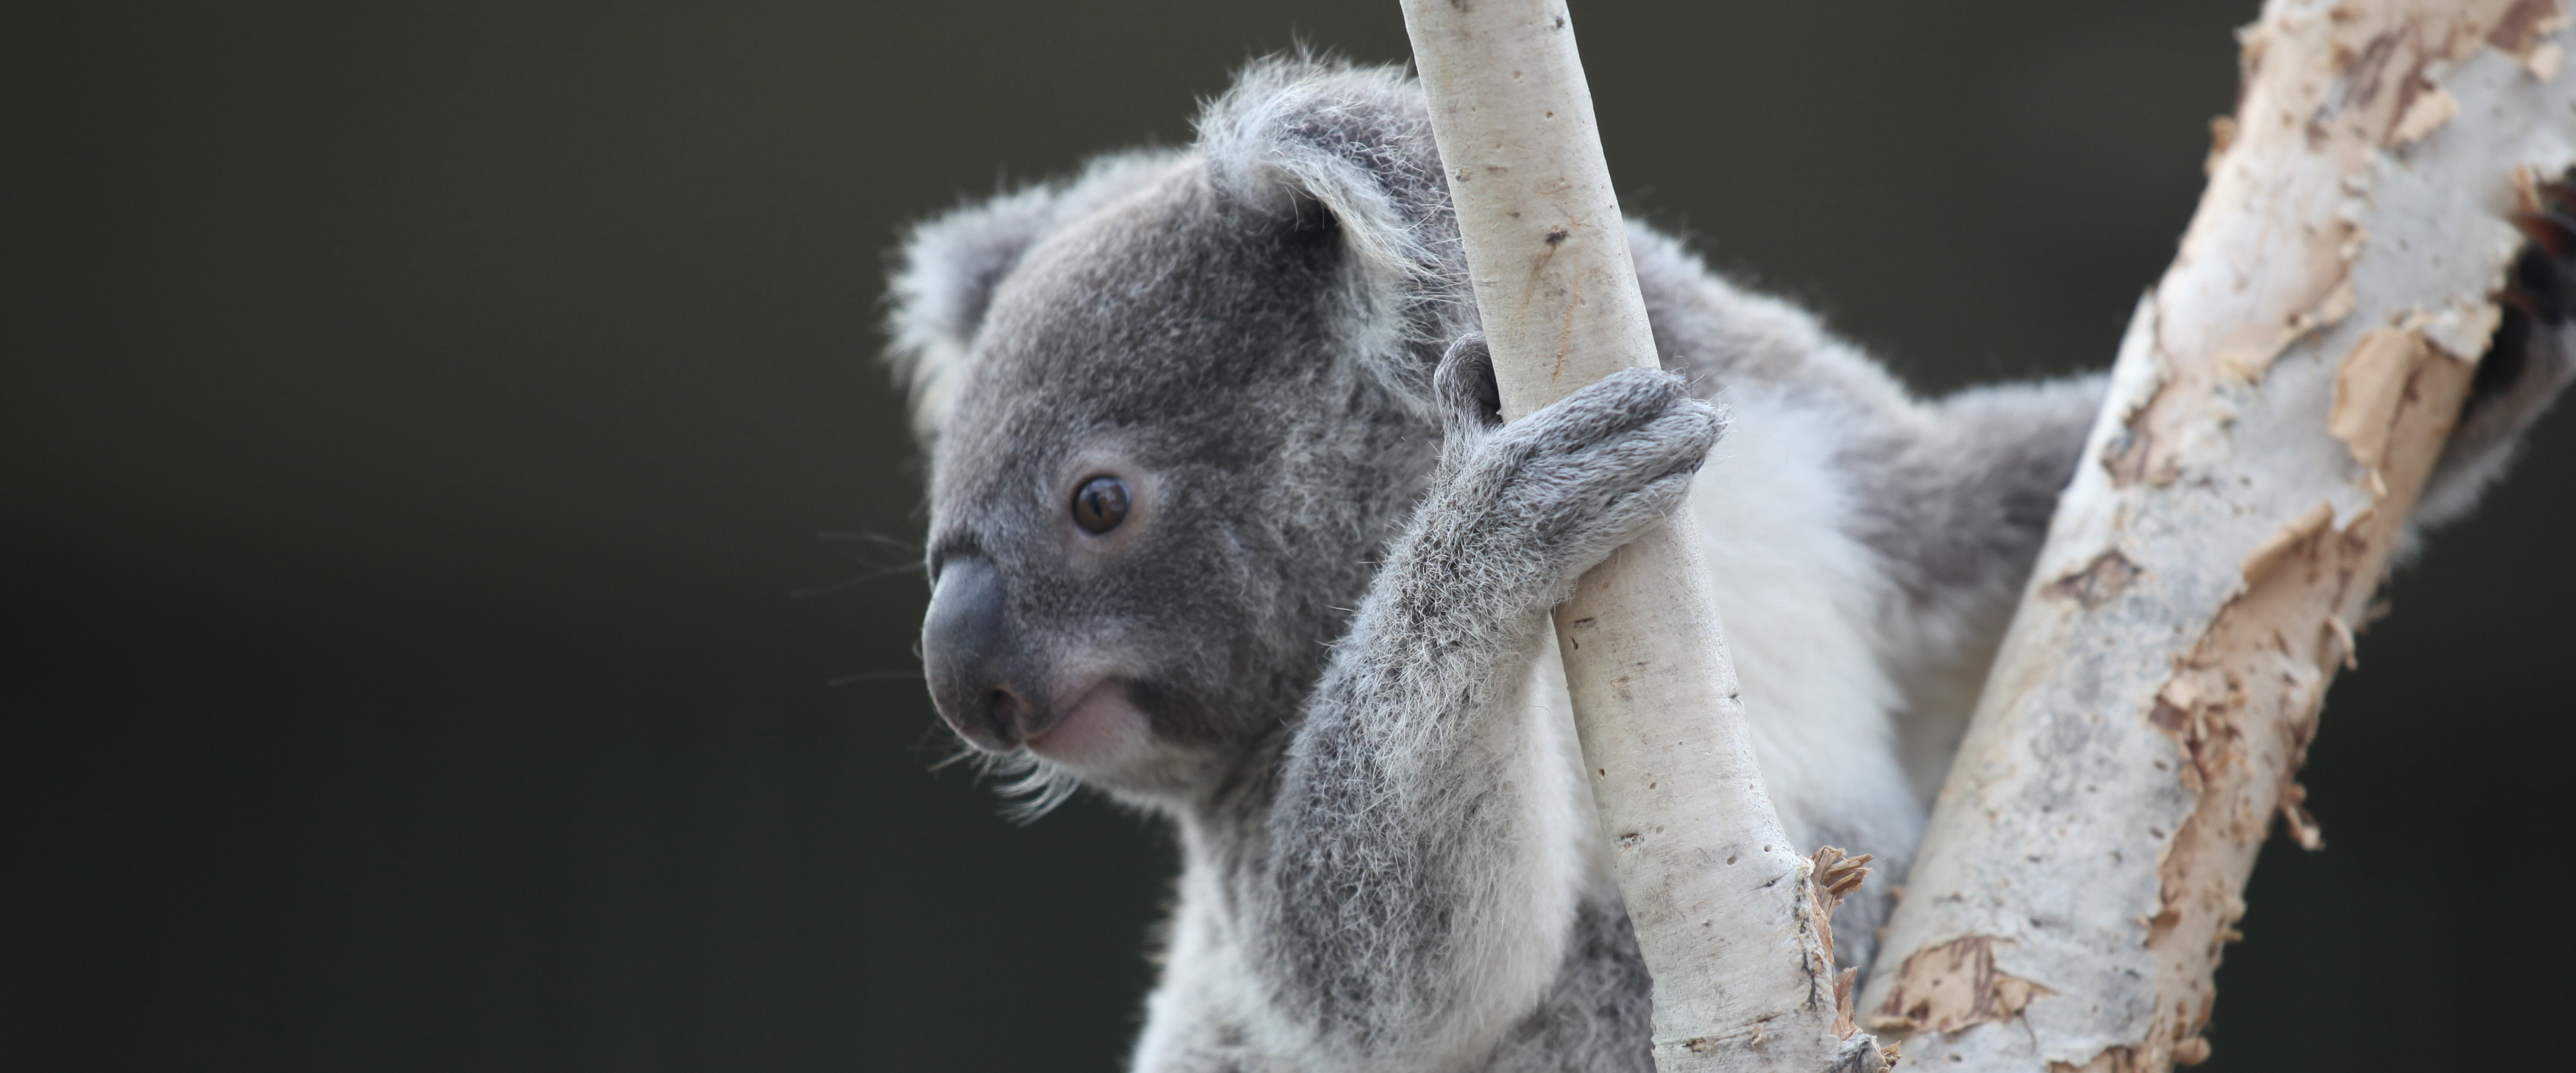 koala on branch